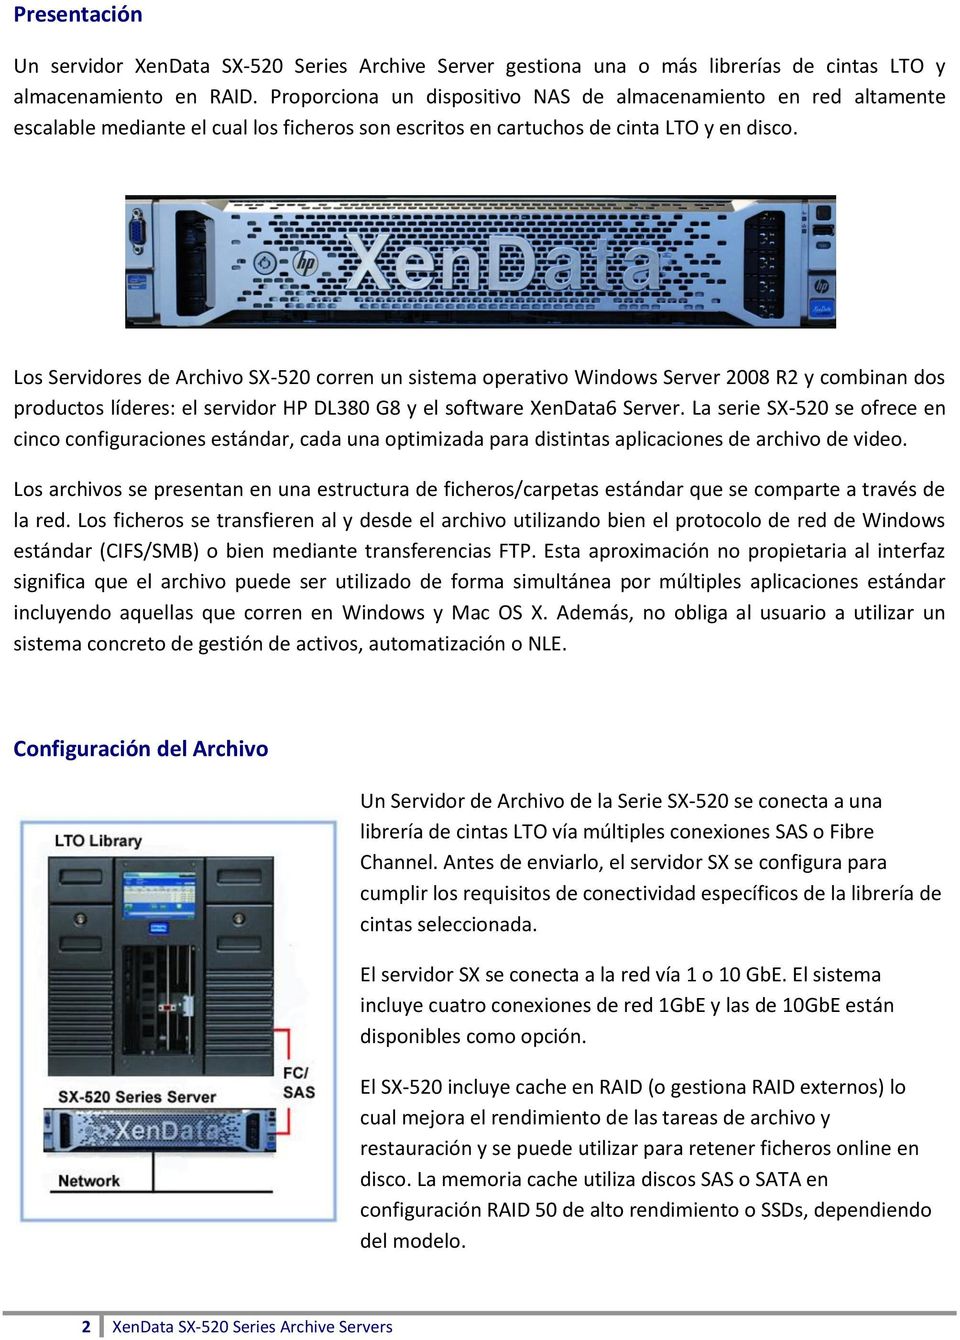 Los Servidores de Archivo SX-520 corren un sistema operativo Windows Server 2008 R2 y combinan dos productos líderes: el servidor HP DL380 G8 y el software XenData6 Server.